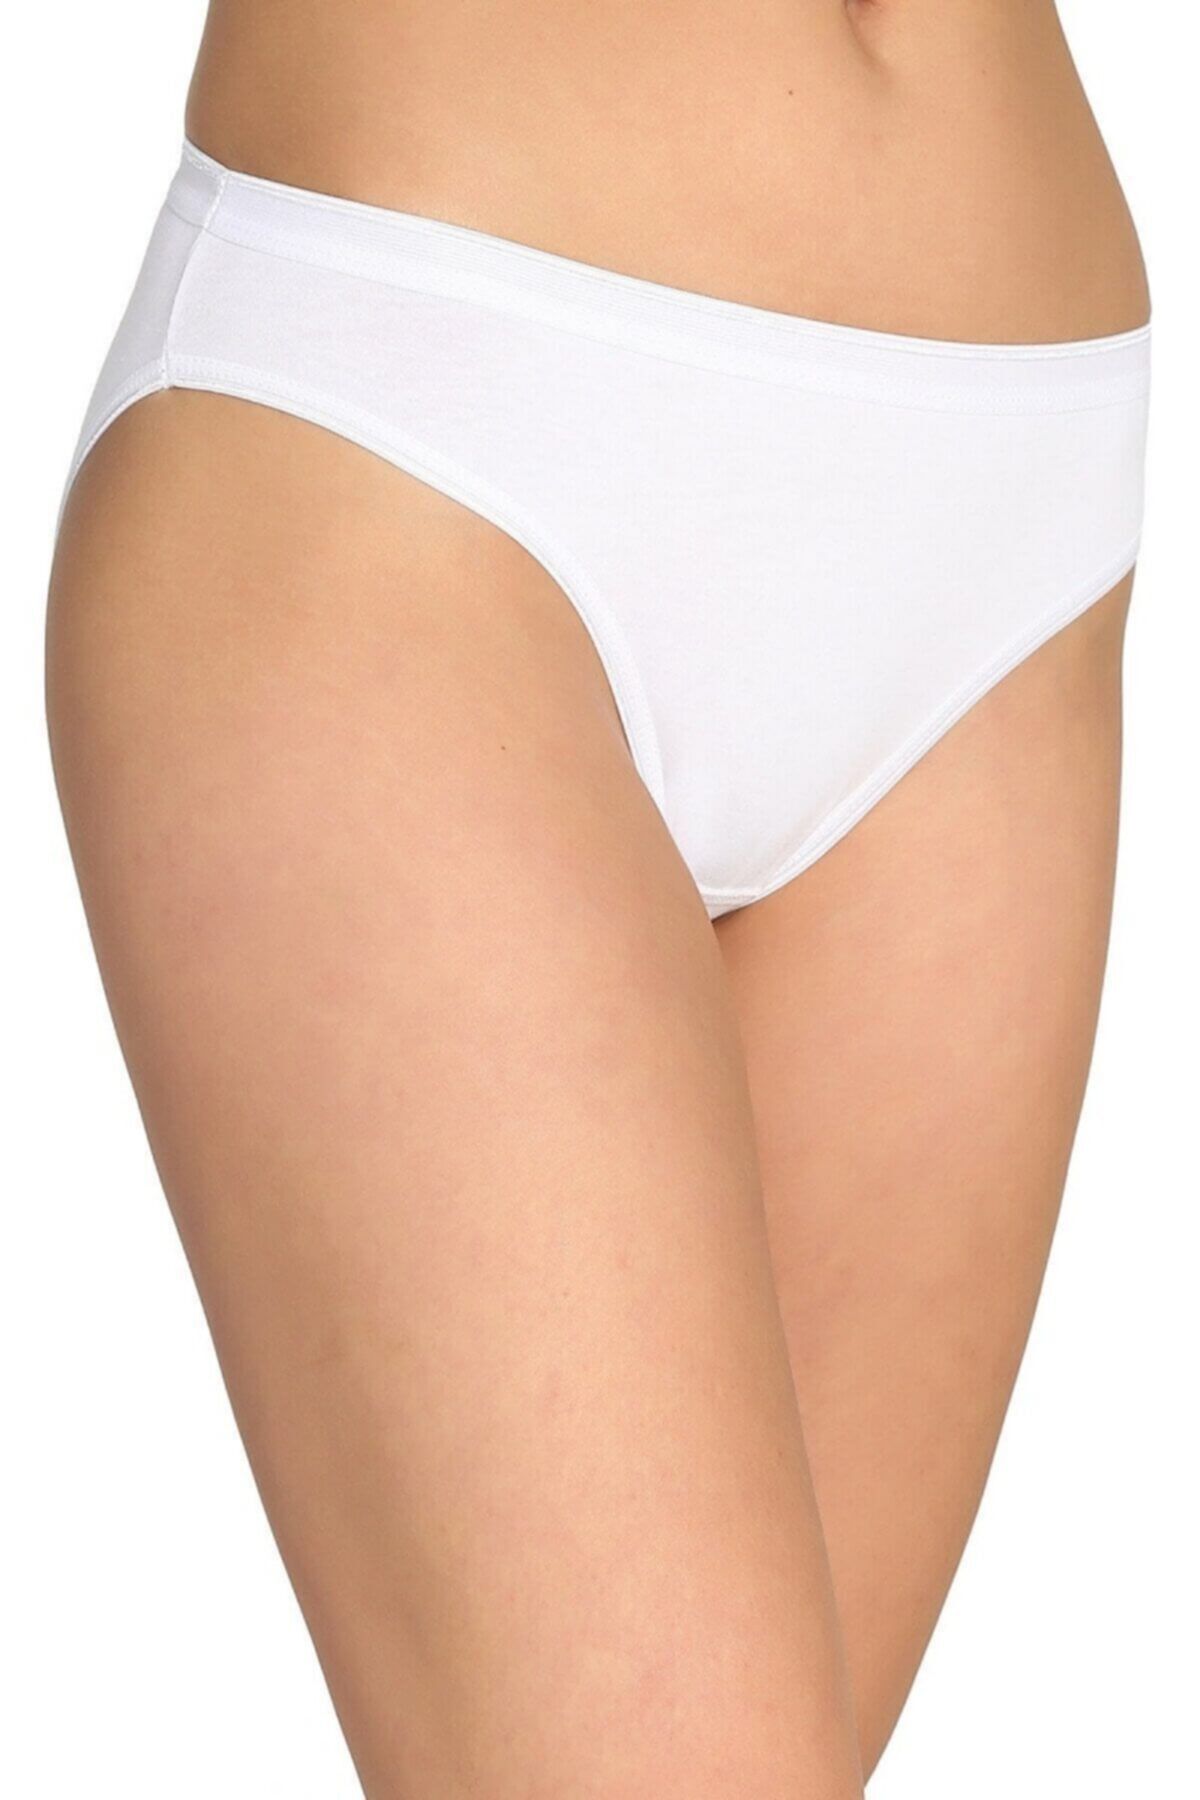 Tutku Kadın 12'li Paket Bikini Slip Külot (Beyaz)